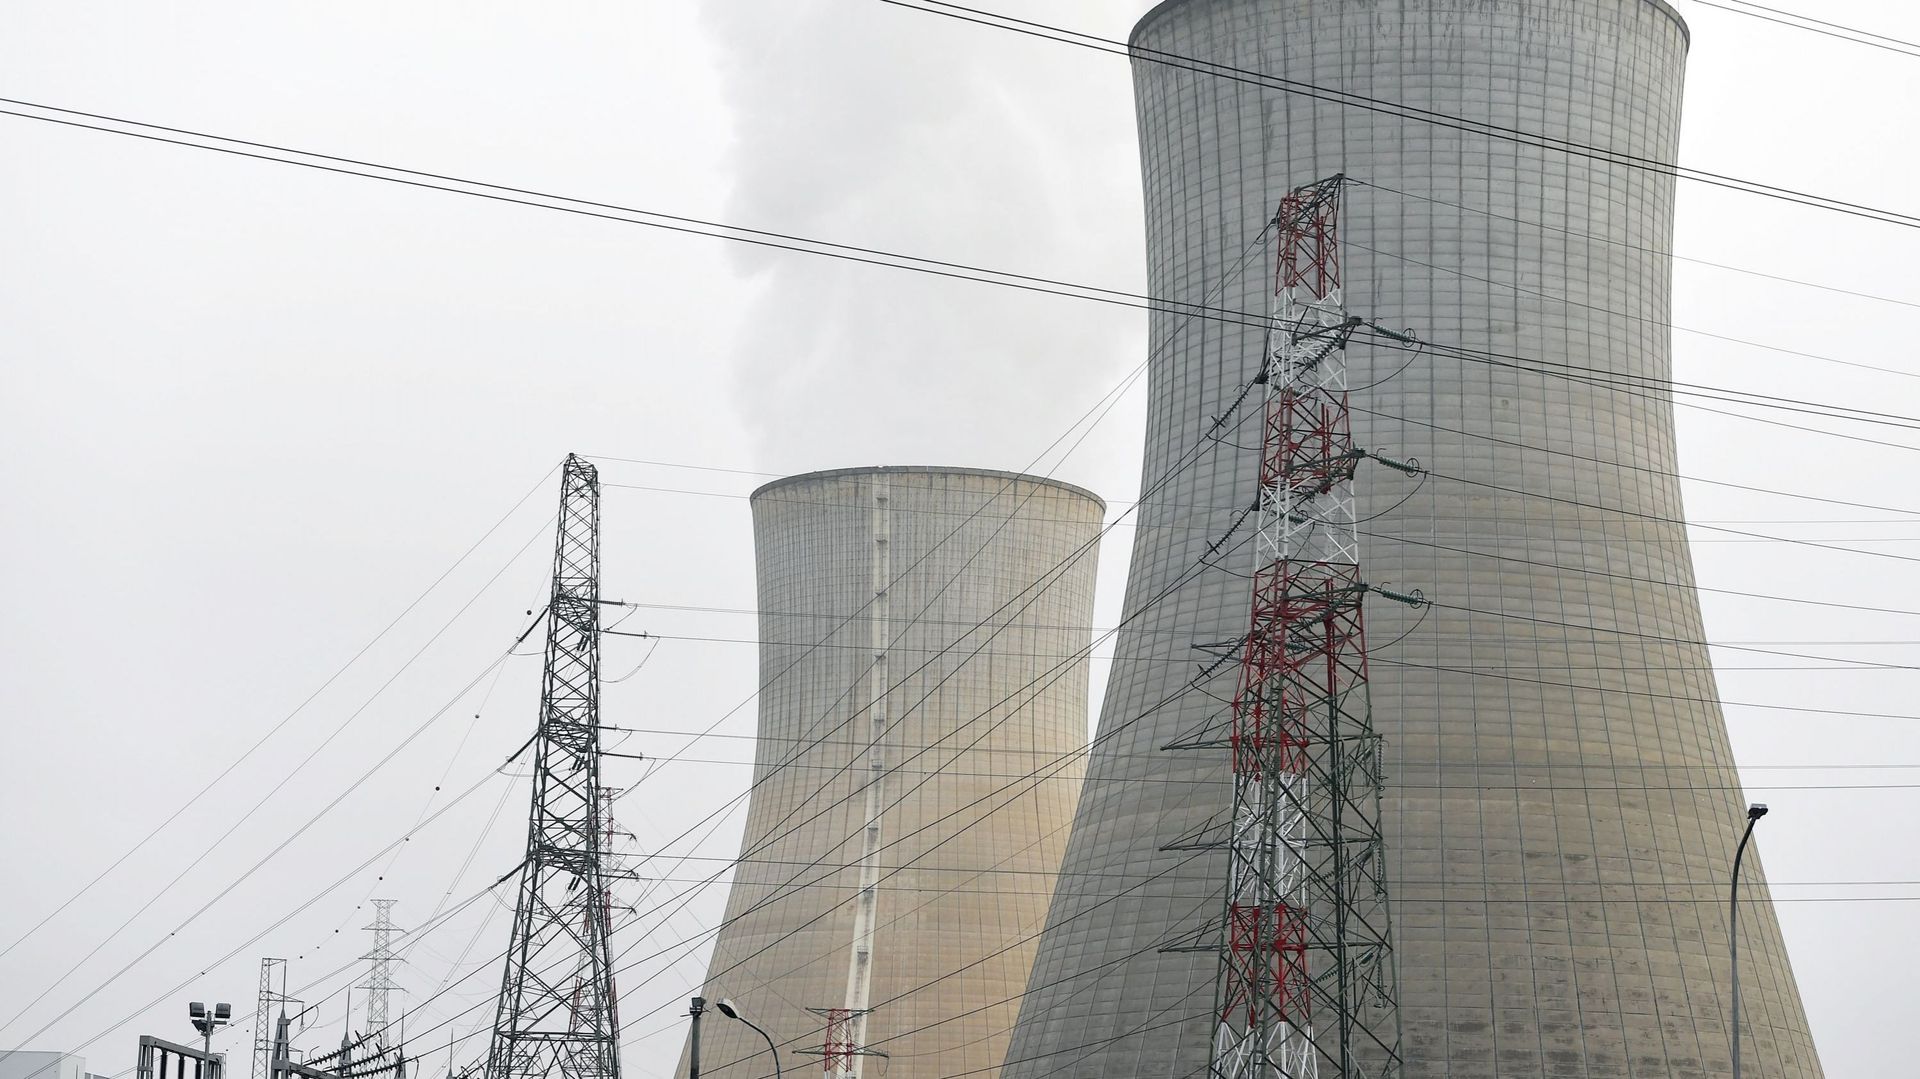 Le groupe pourHuy s'oppose à la prise de position qu'il juge "caricaturale" qui consiste à exiger la fermeture immédiate des centrales nucléaires de Tihange et de Doel. 